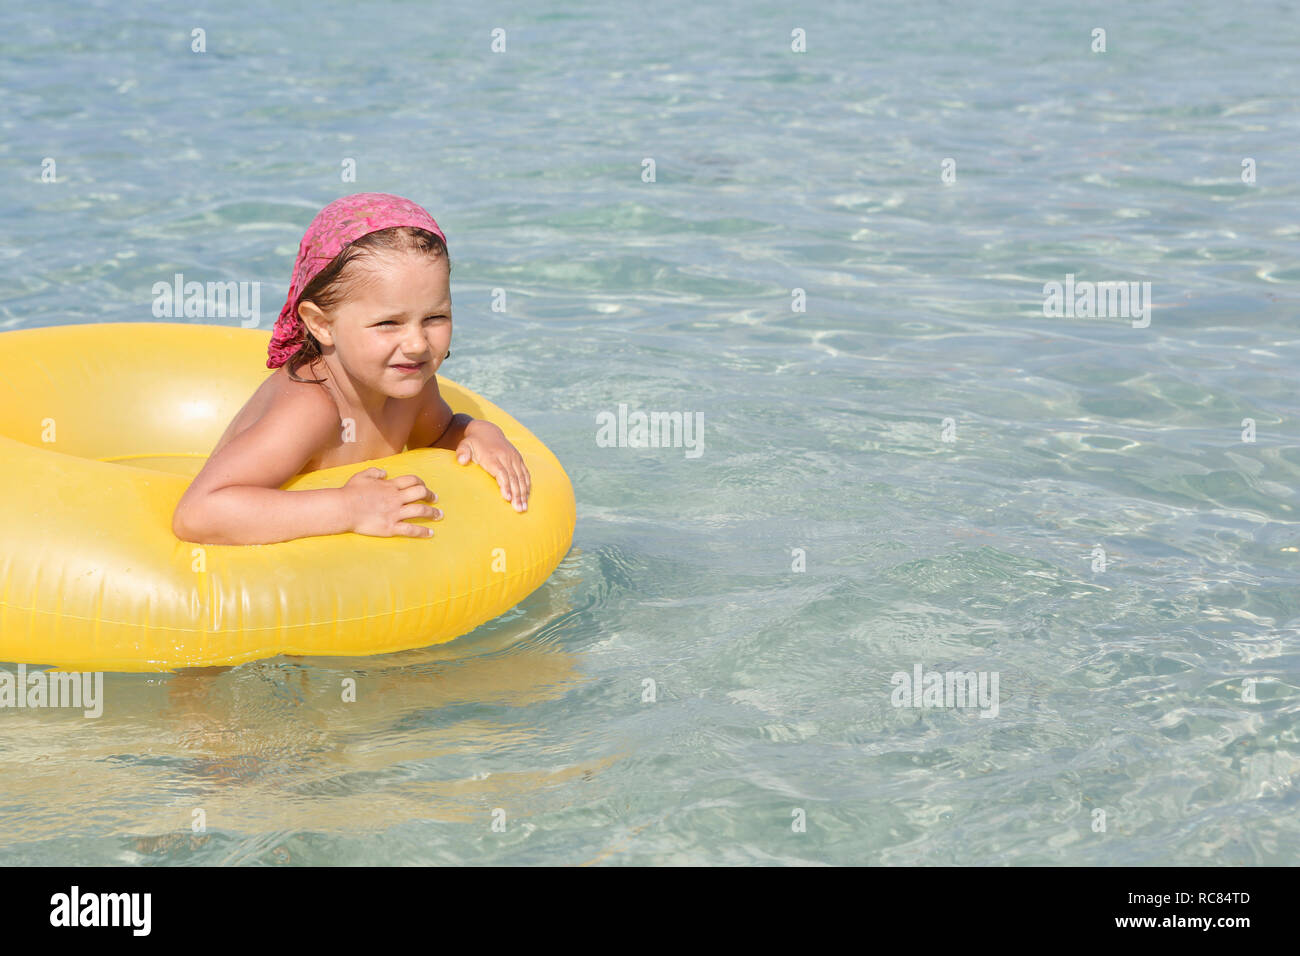 Mädchen spielen mit gelben Schlauchboot im Meer, San Vito lo Capo, Sizilien, Italien Stockfoto